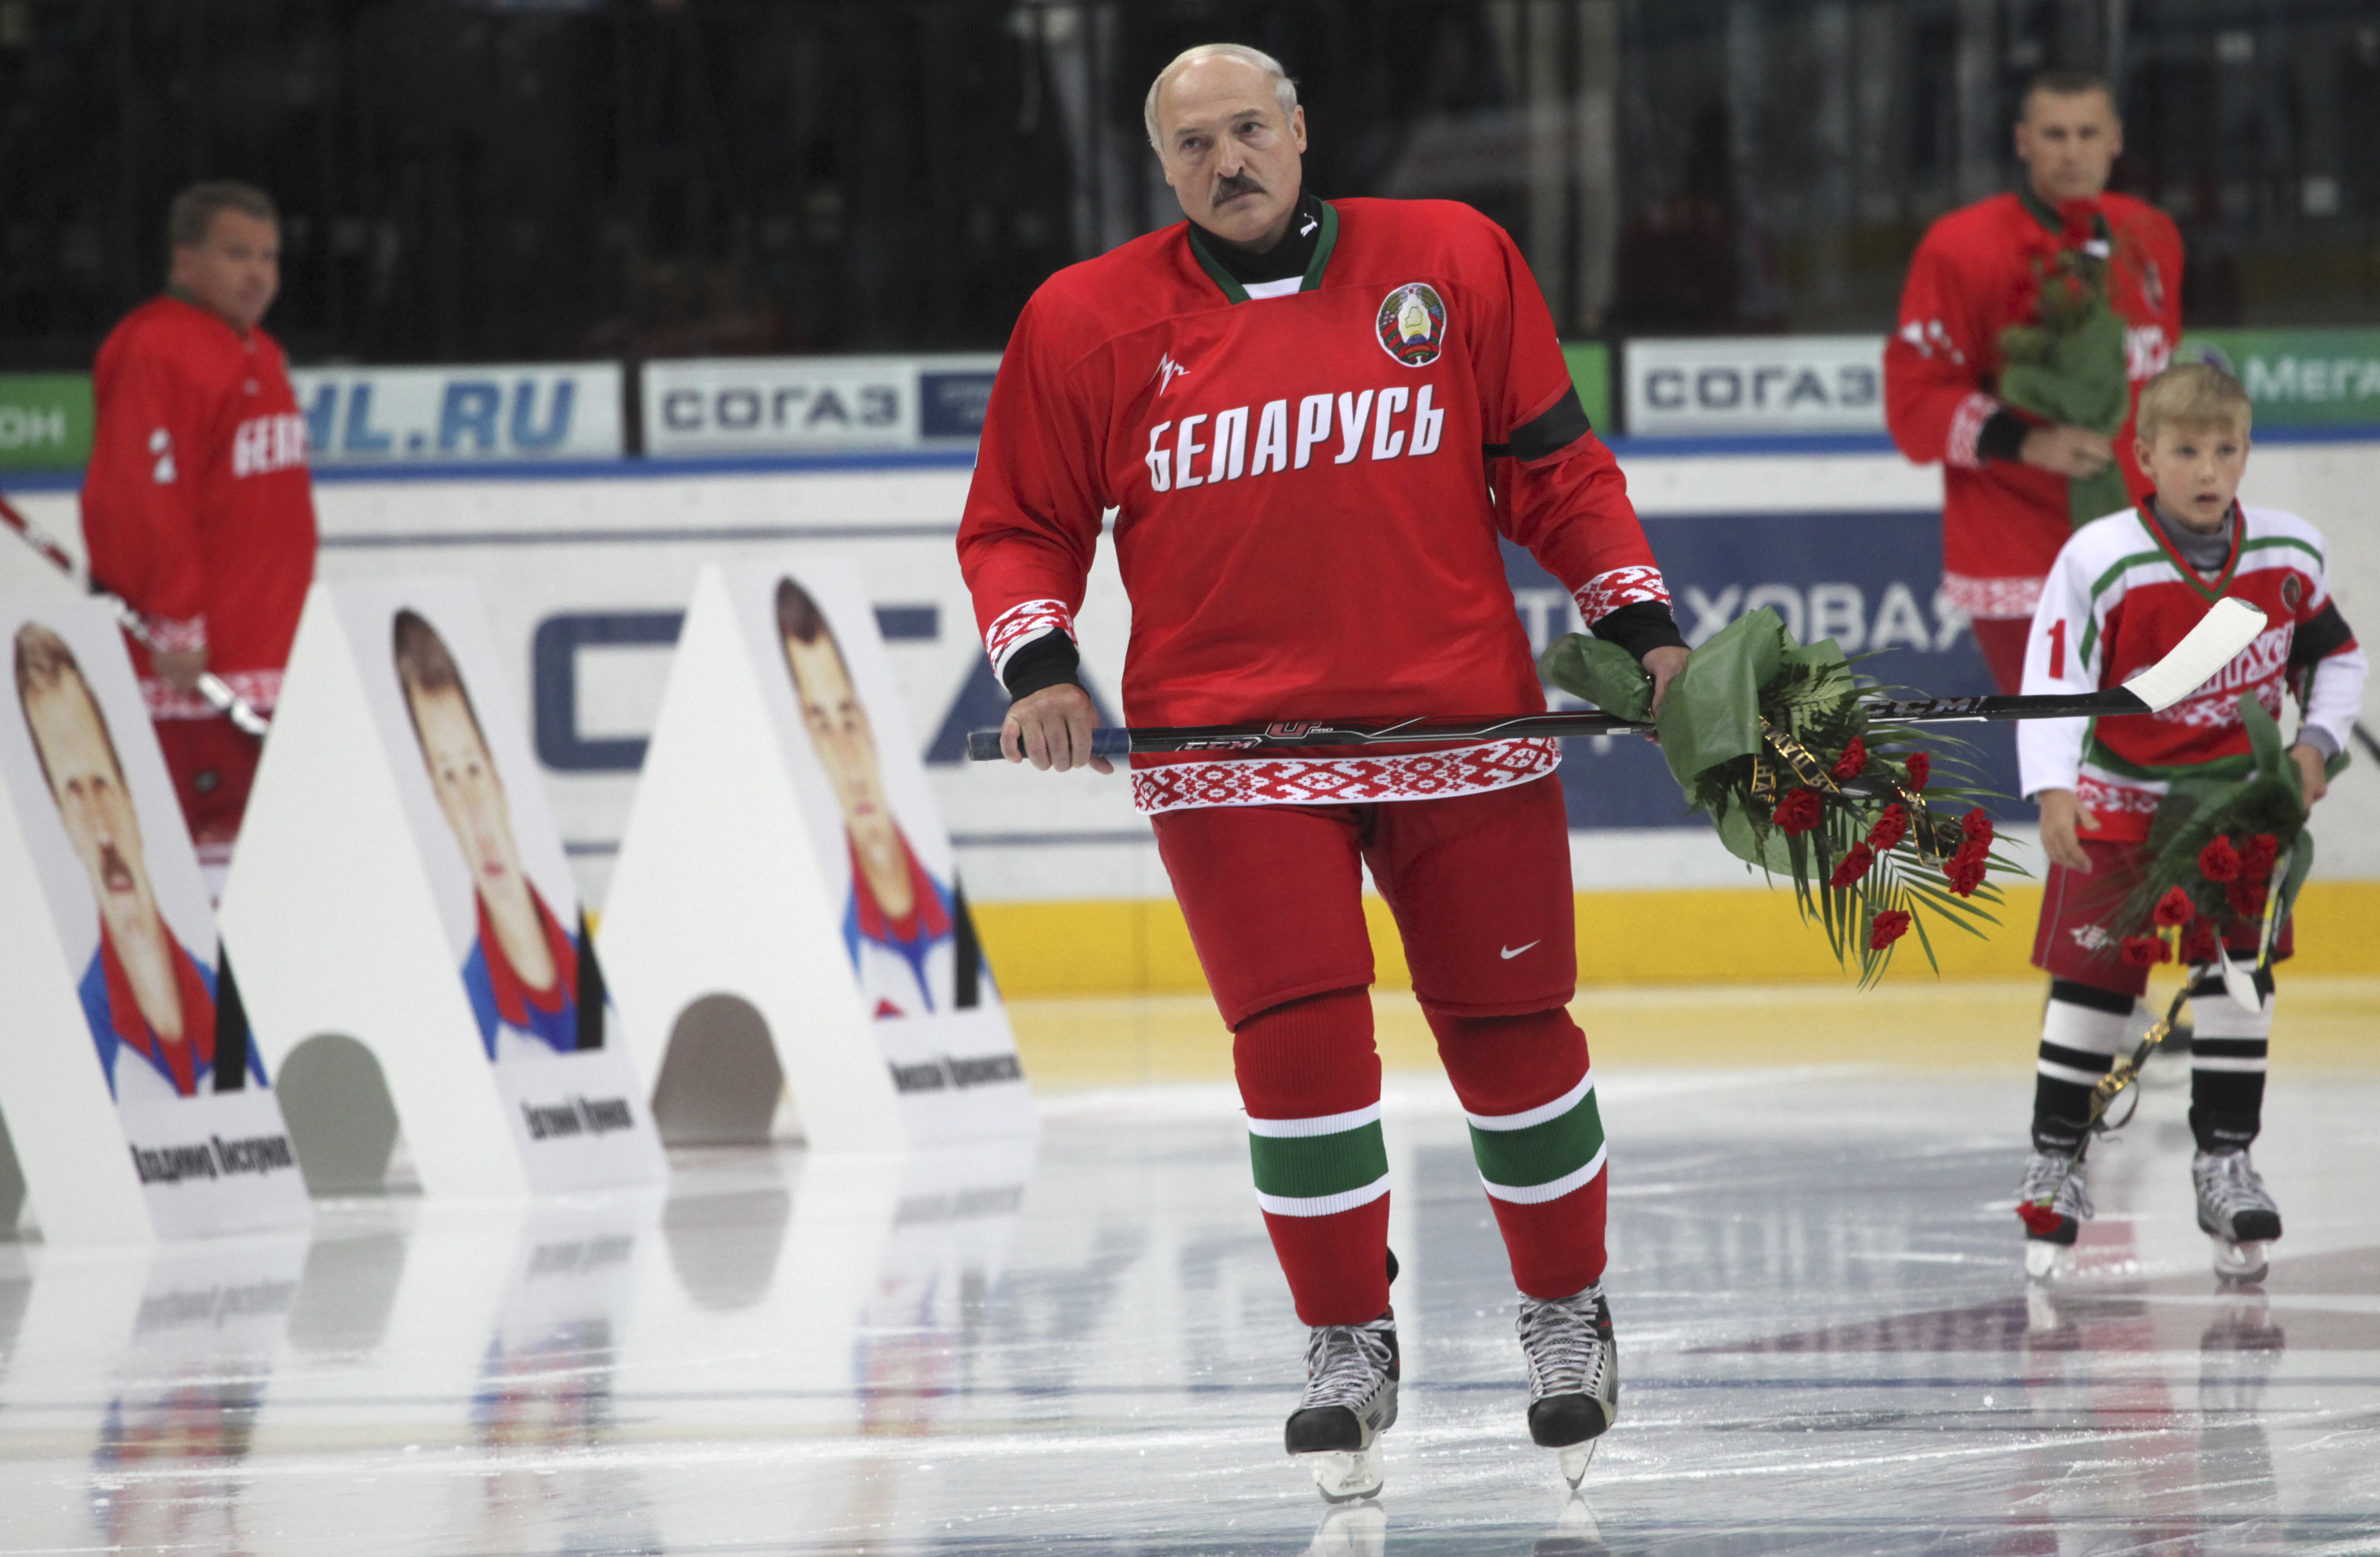 Demokrati, Aleksandr Lukasjenko, ishockey, Christer Englund, Mänskliga rättigheter, Tre Kronor, Vitryssland, VM